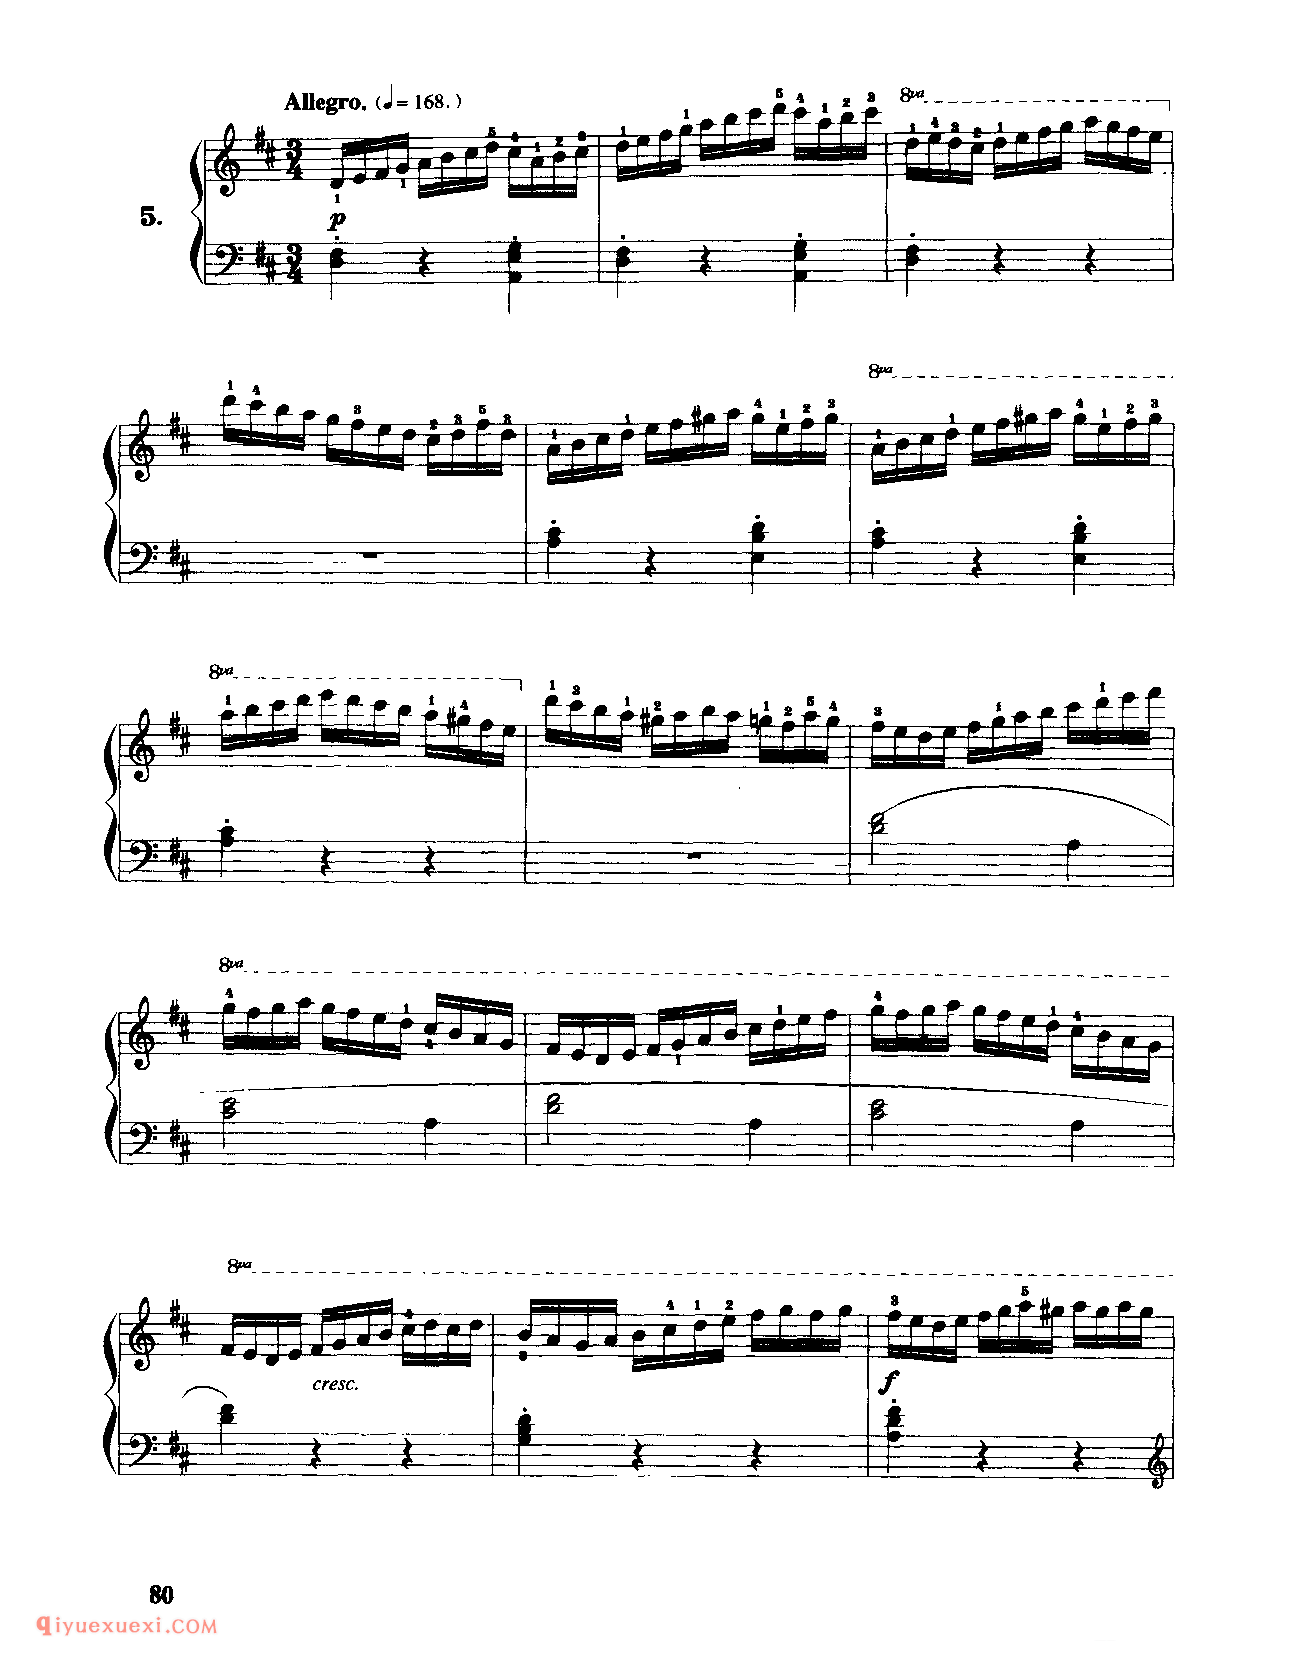 车尔尼作品636_手指灵巧的钢琴初步练习曲_车尔尼钢琴练习曲集